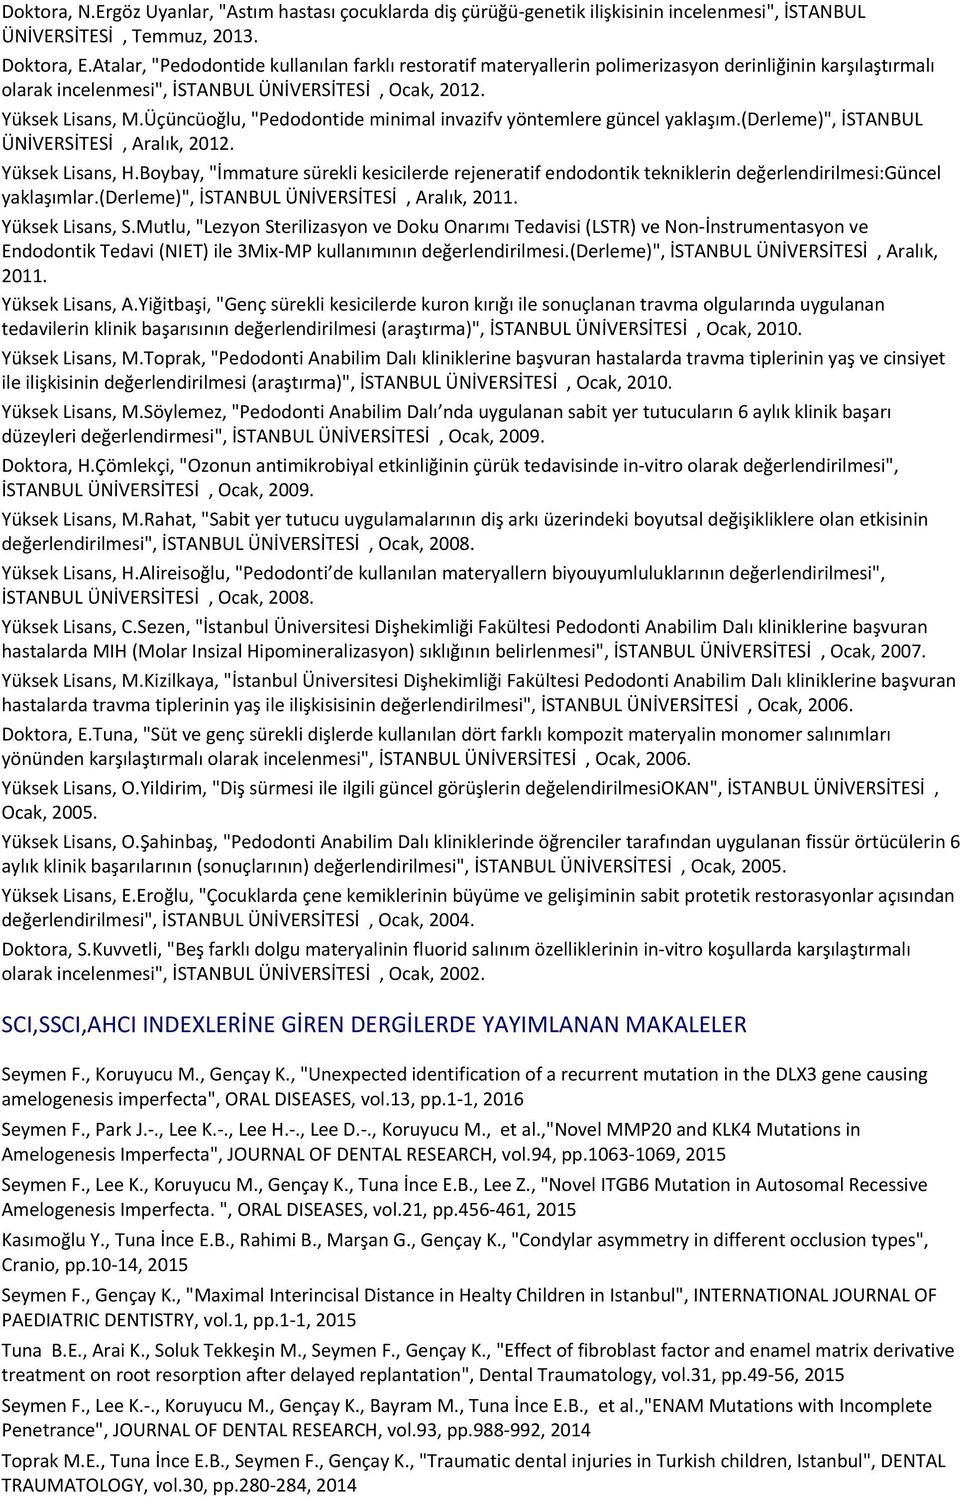 Üçüncüoğlu, "Pedodontide minimal invazifv yöntemlere güncel yaklaşım.(derleme)", İSTANBUL ÜNİVERSİTESİ, Aralık, 2012. Yüksek Lisans, H.